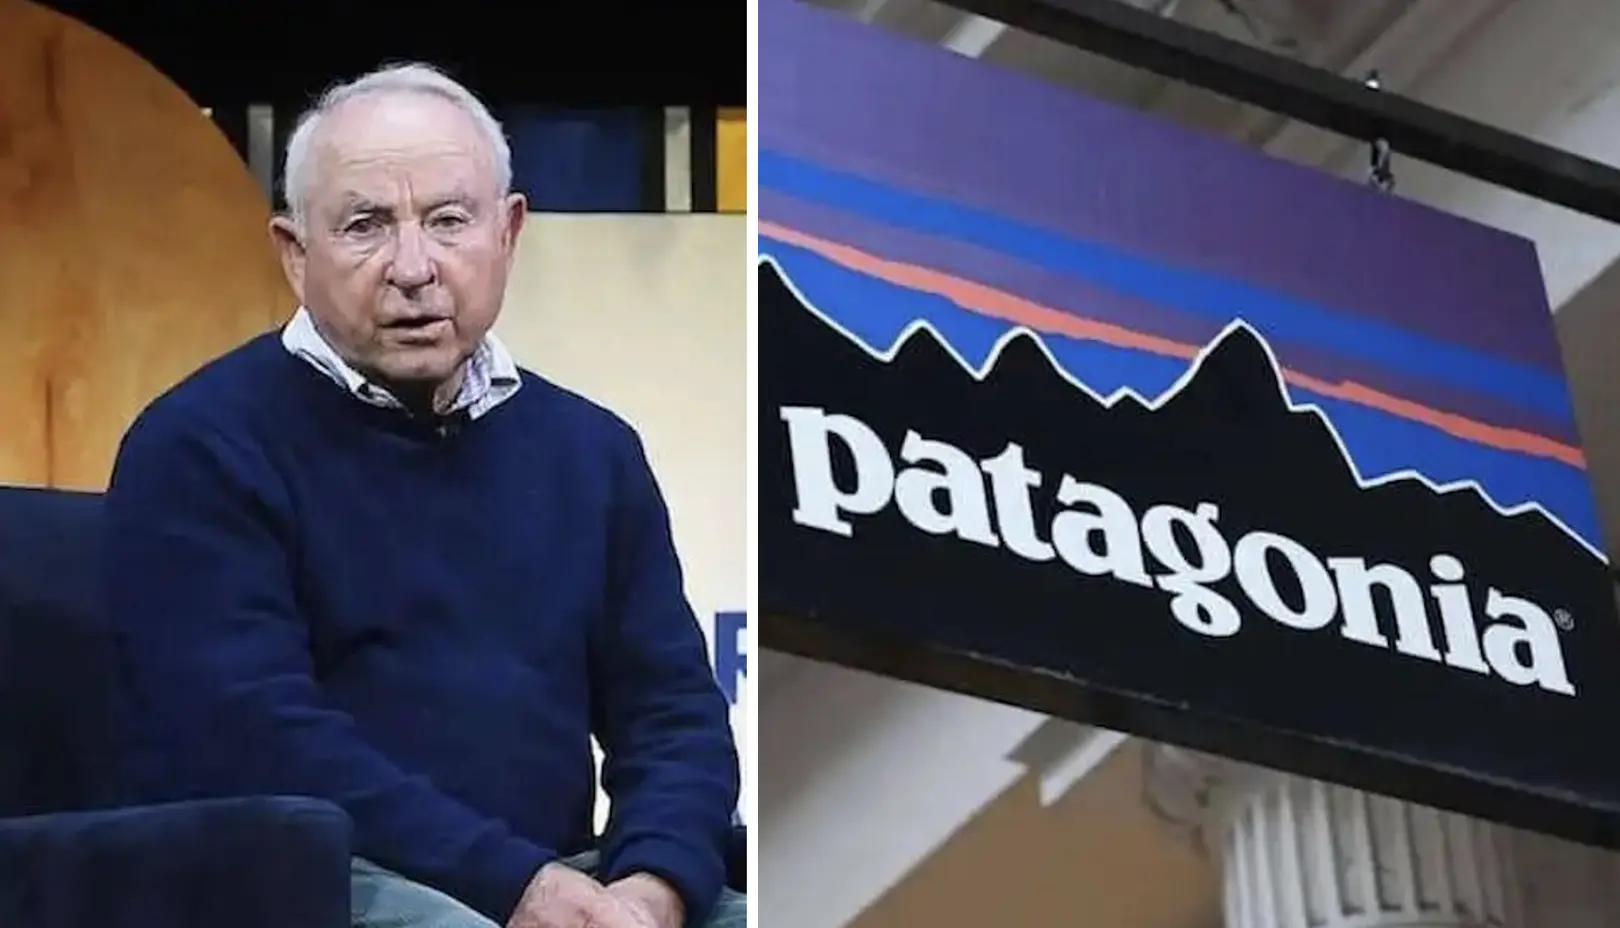 patagonia ropa - Quién es el dueño de Patagonia ropa